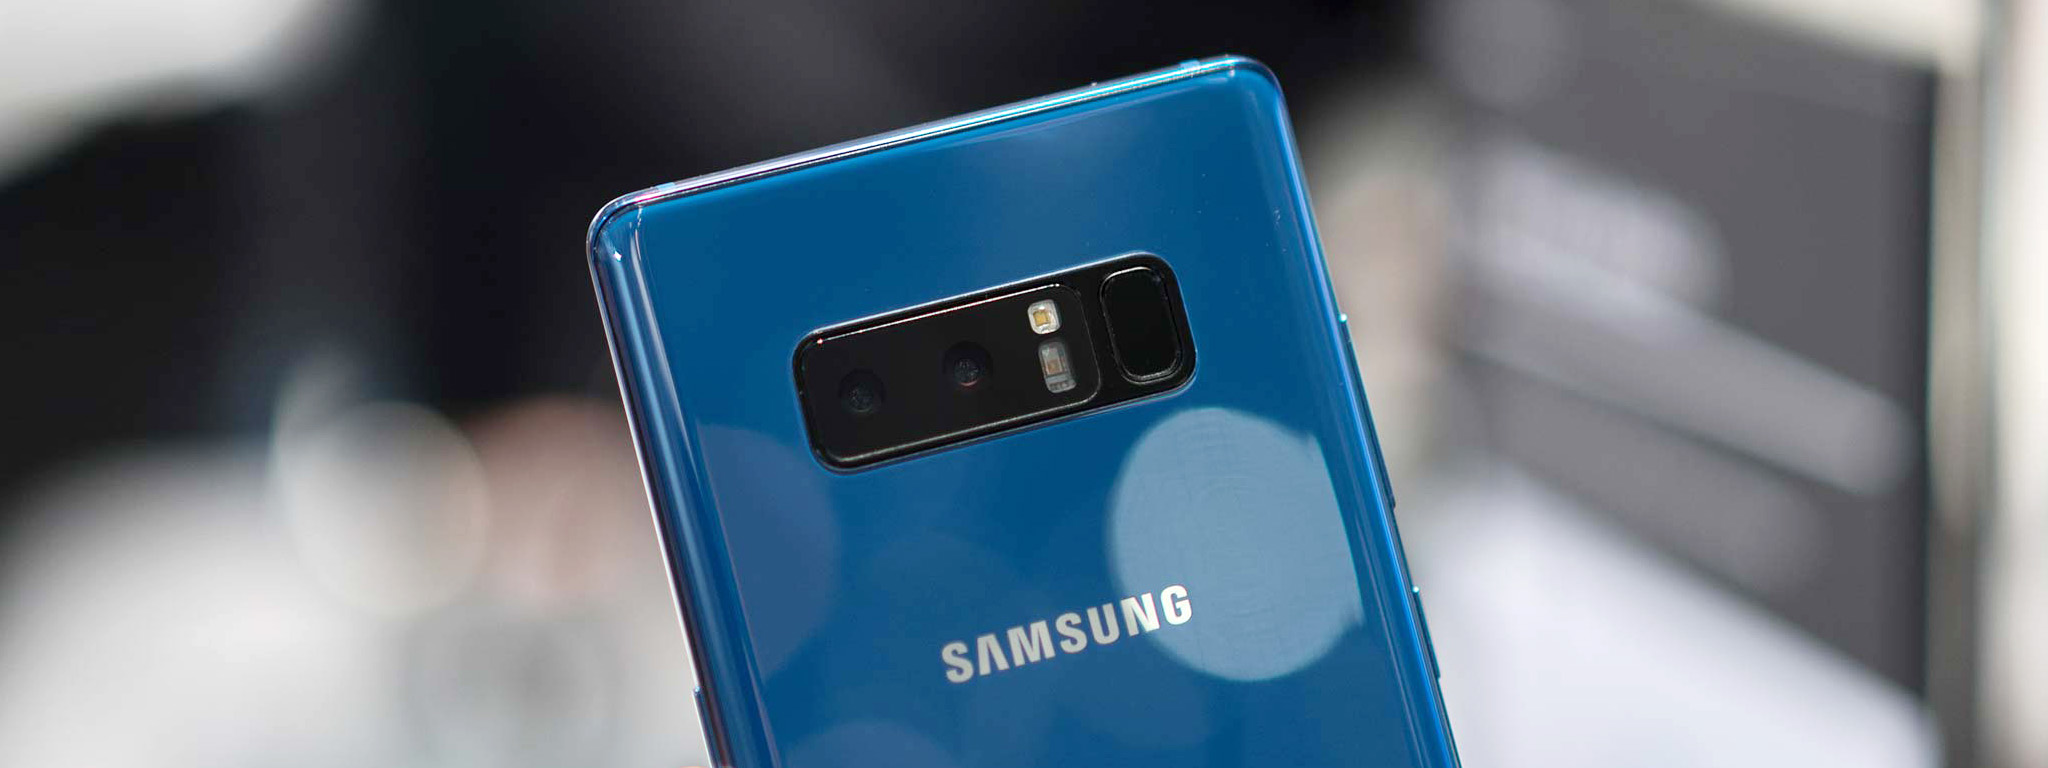 Galaxy Note8 phá kỉ lục của Samsung về số máy được đặt hàng trước tại Mỹ